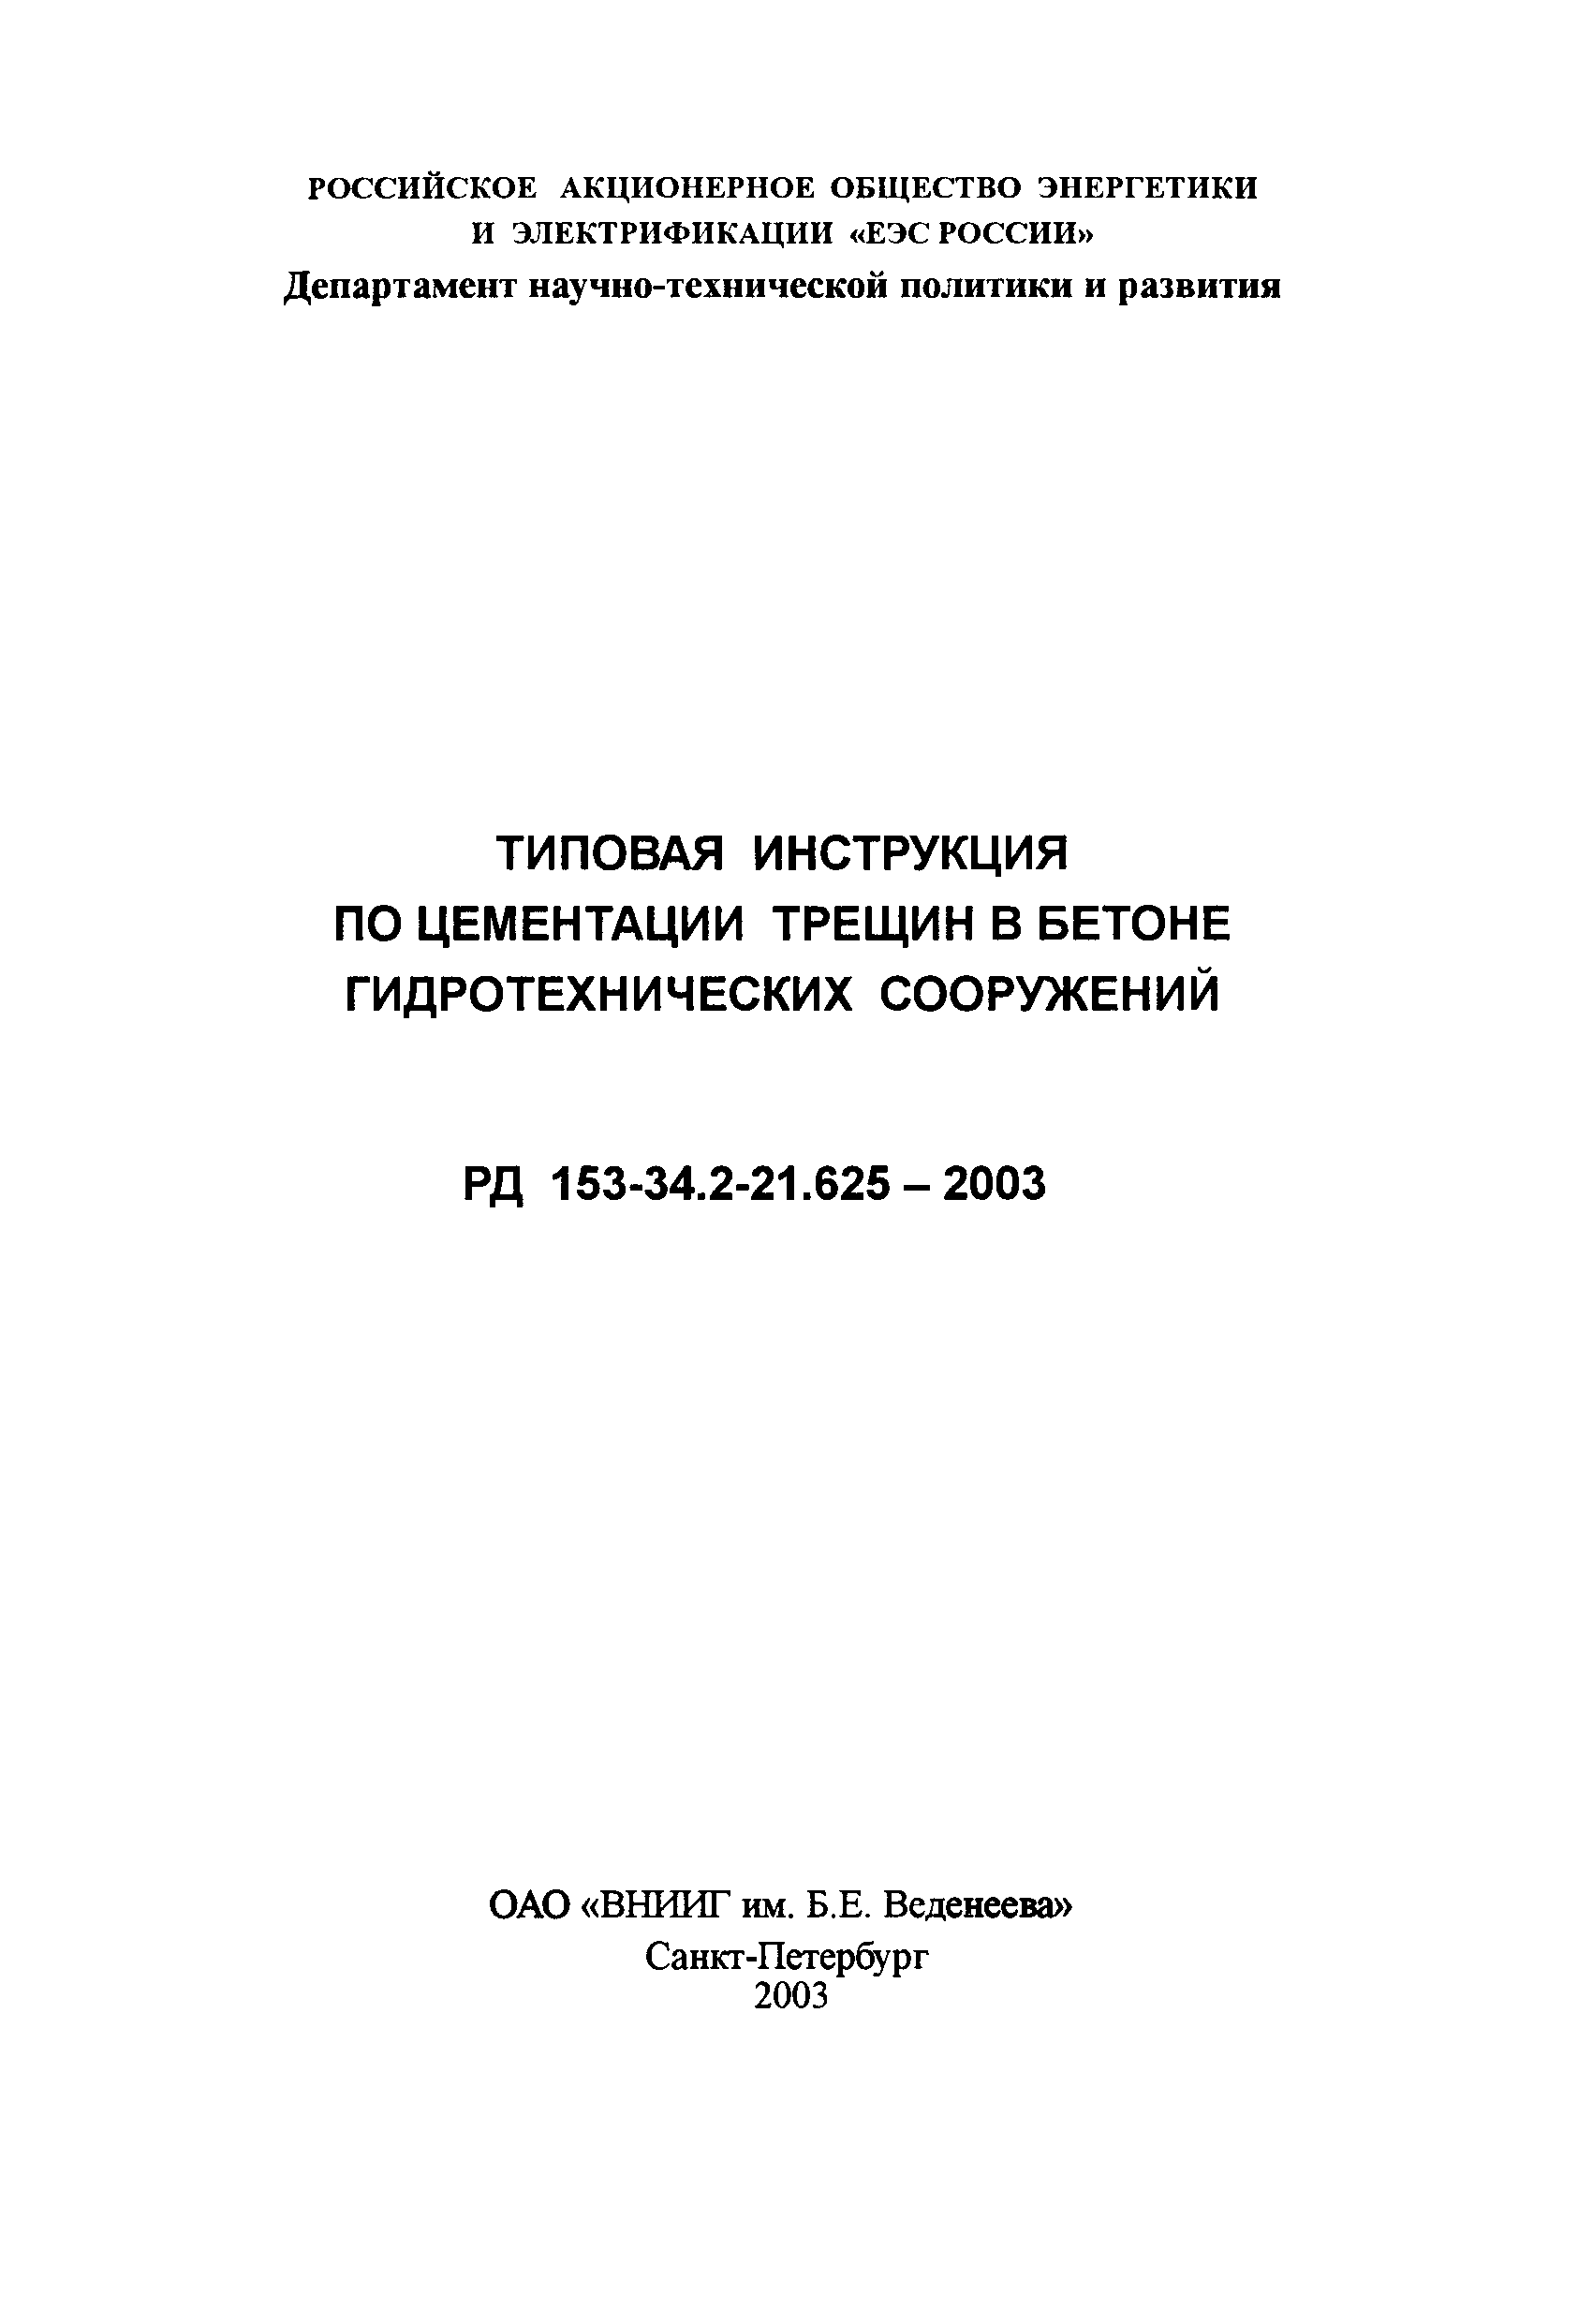 РД 153-34.2-21.625-2003